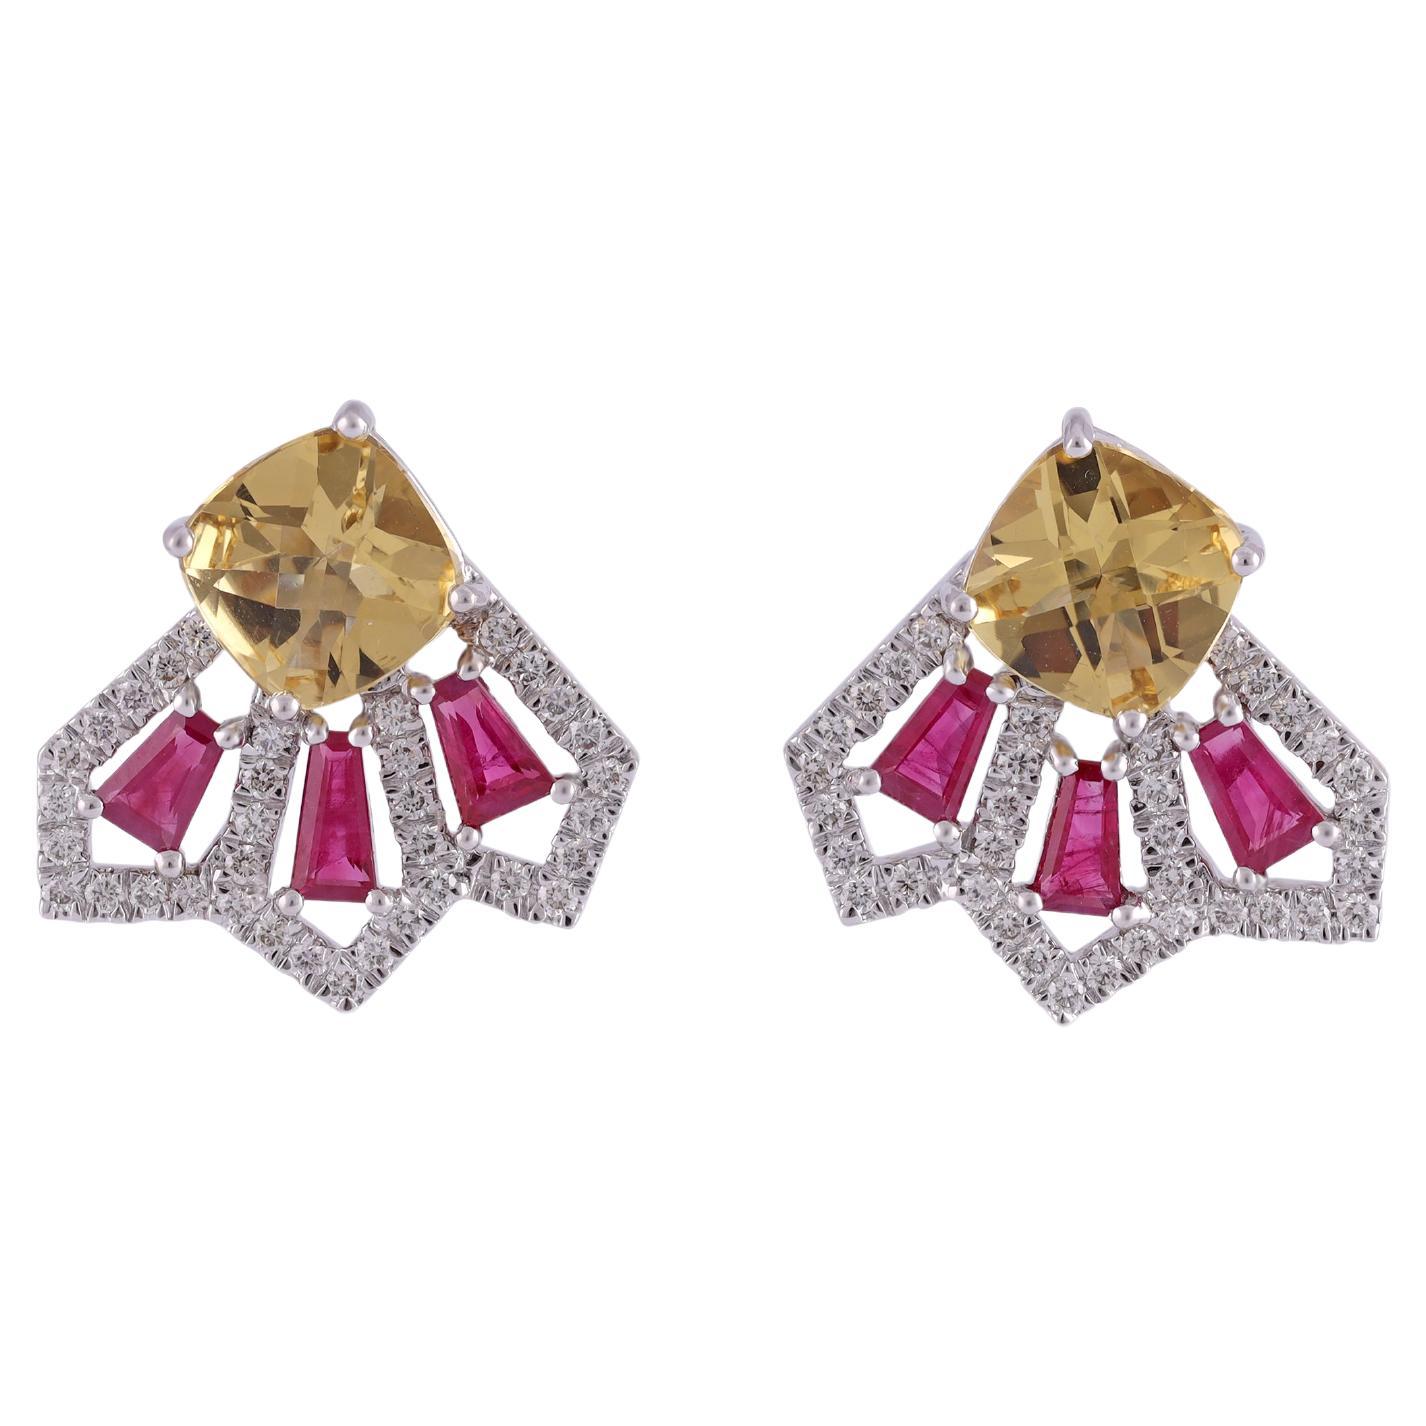 2.30 Carat Clear Ruby & Diamond Earring Studs in 18k Gold